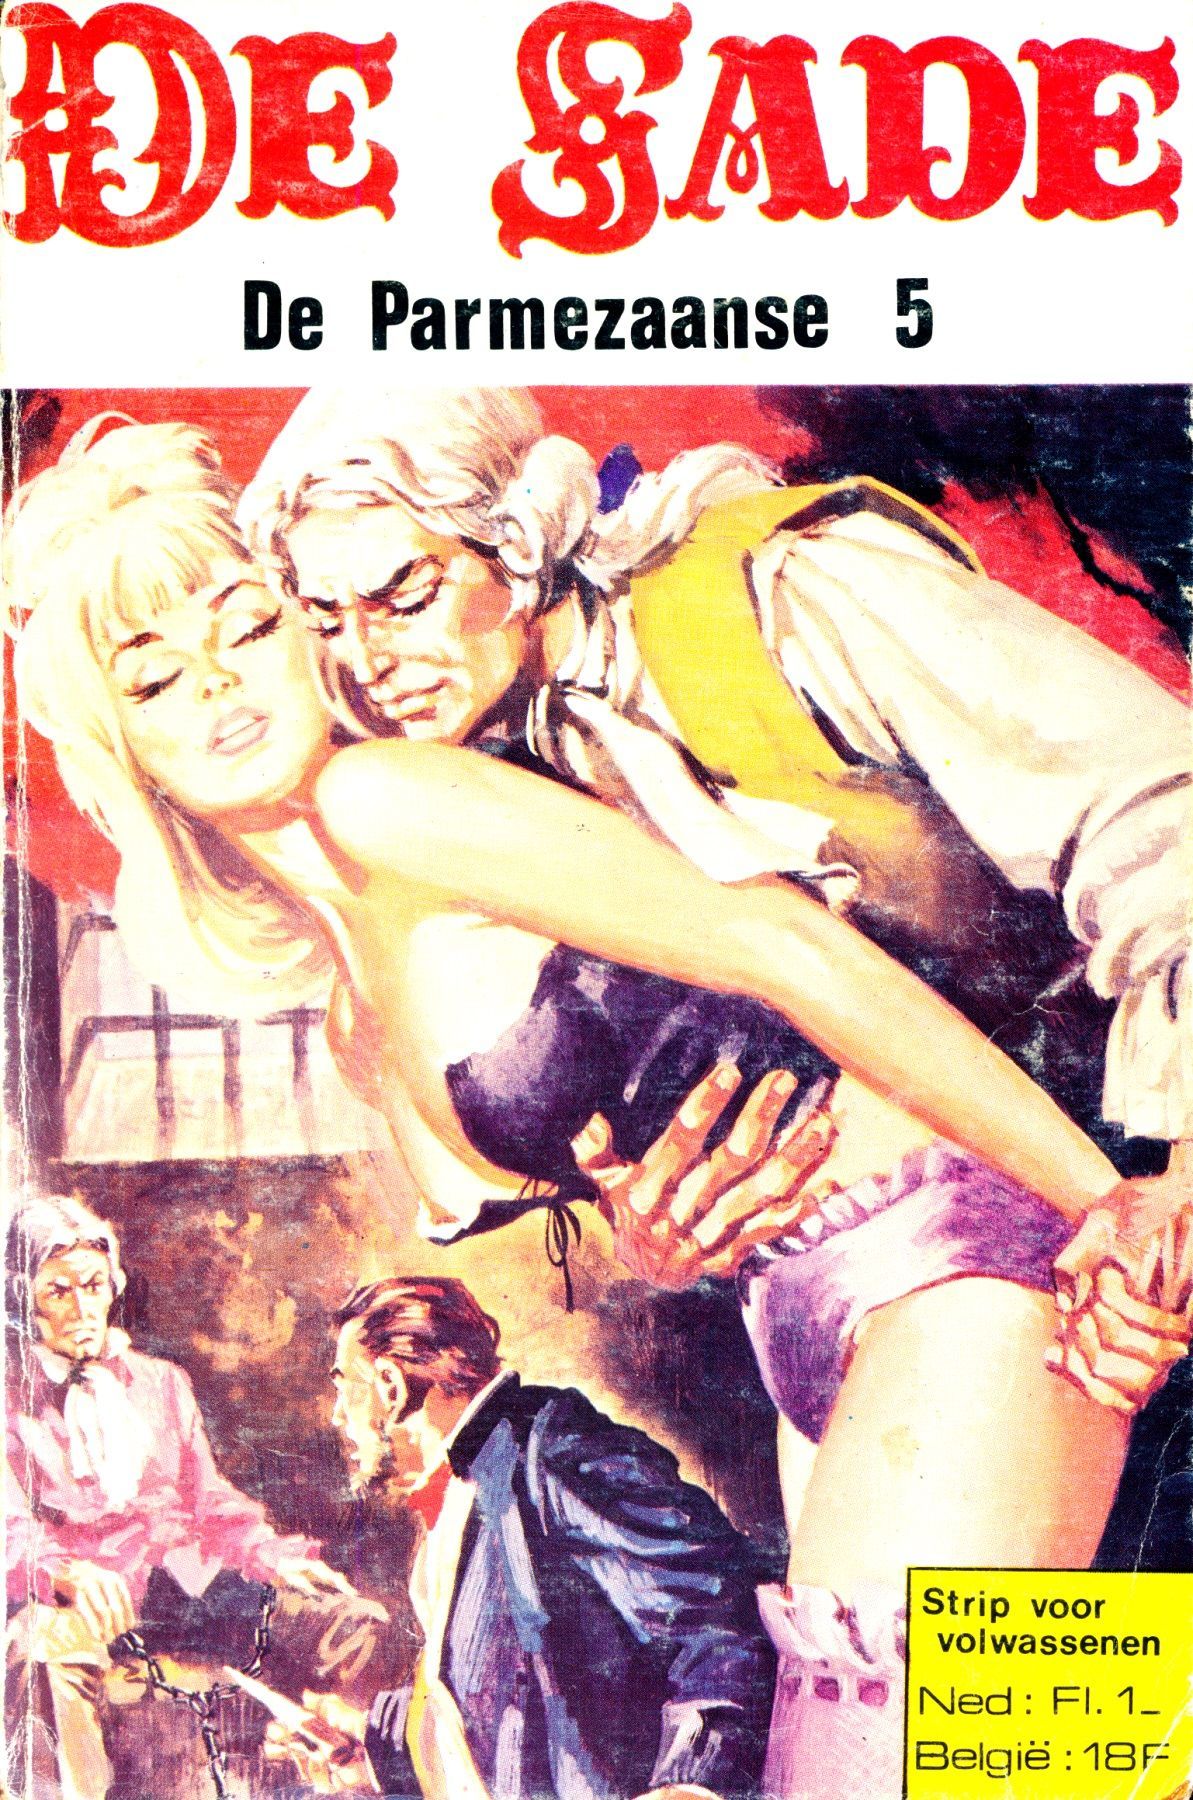 De Parmezaanse (Dutch) In 5 series...53 Nog niet geplaatste strips uit de "De Sade" serie 1